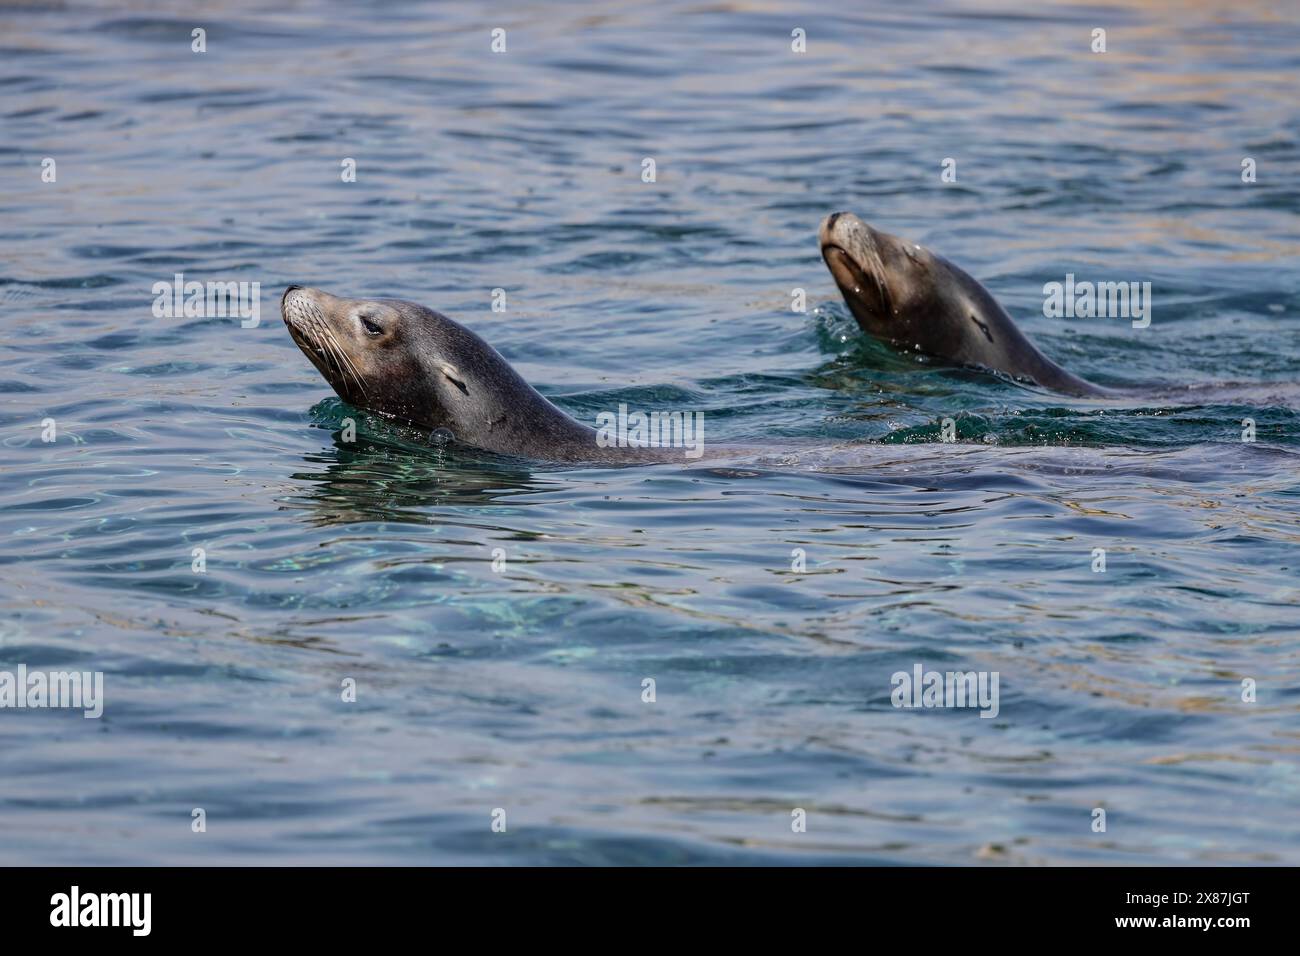 Ein Paar kalifornischer Seelöwen Zalophus californianus in Gefangenschaft, die mit ihren Köpfen über der Oberfläche im Wasser spielen Stockfoto